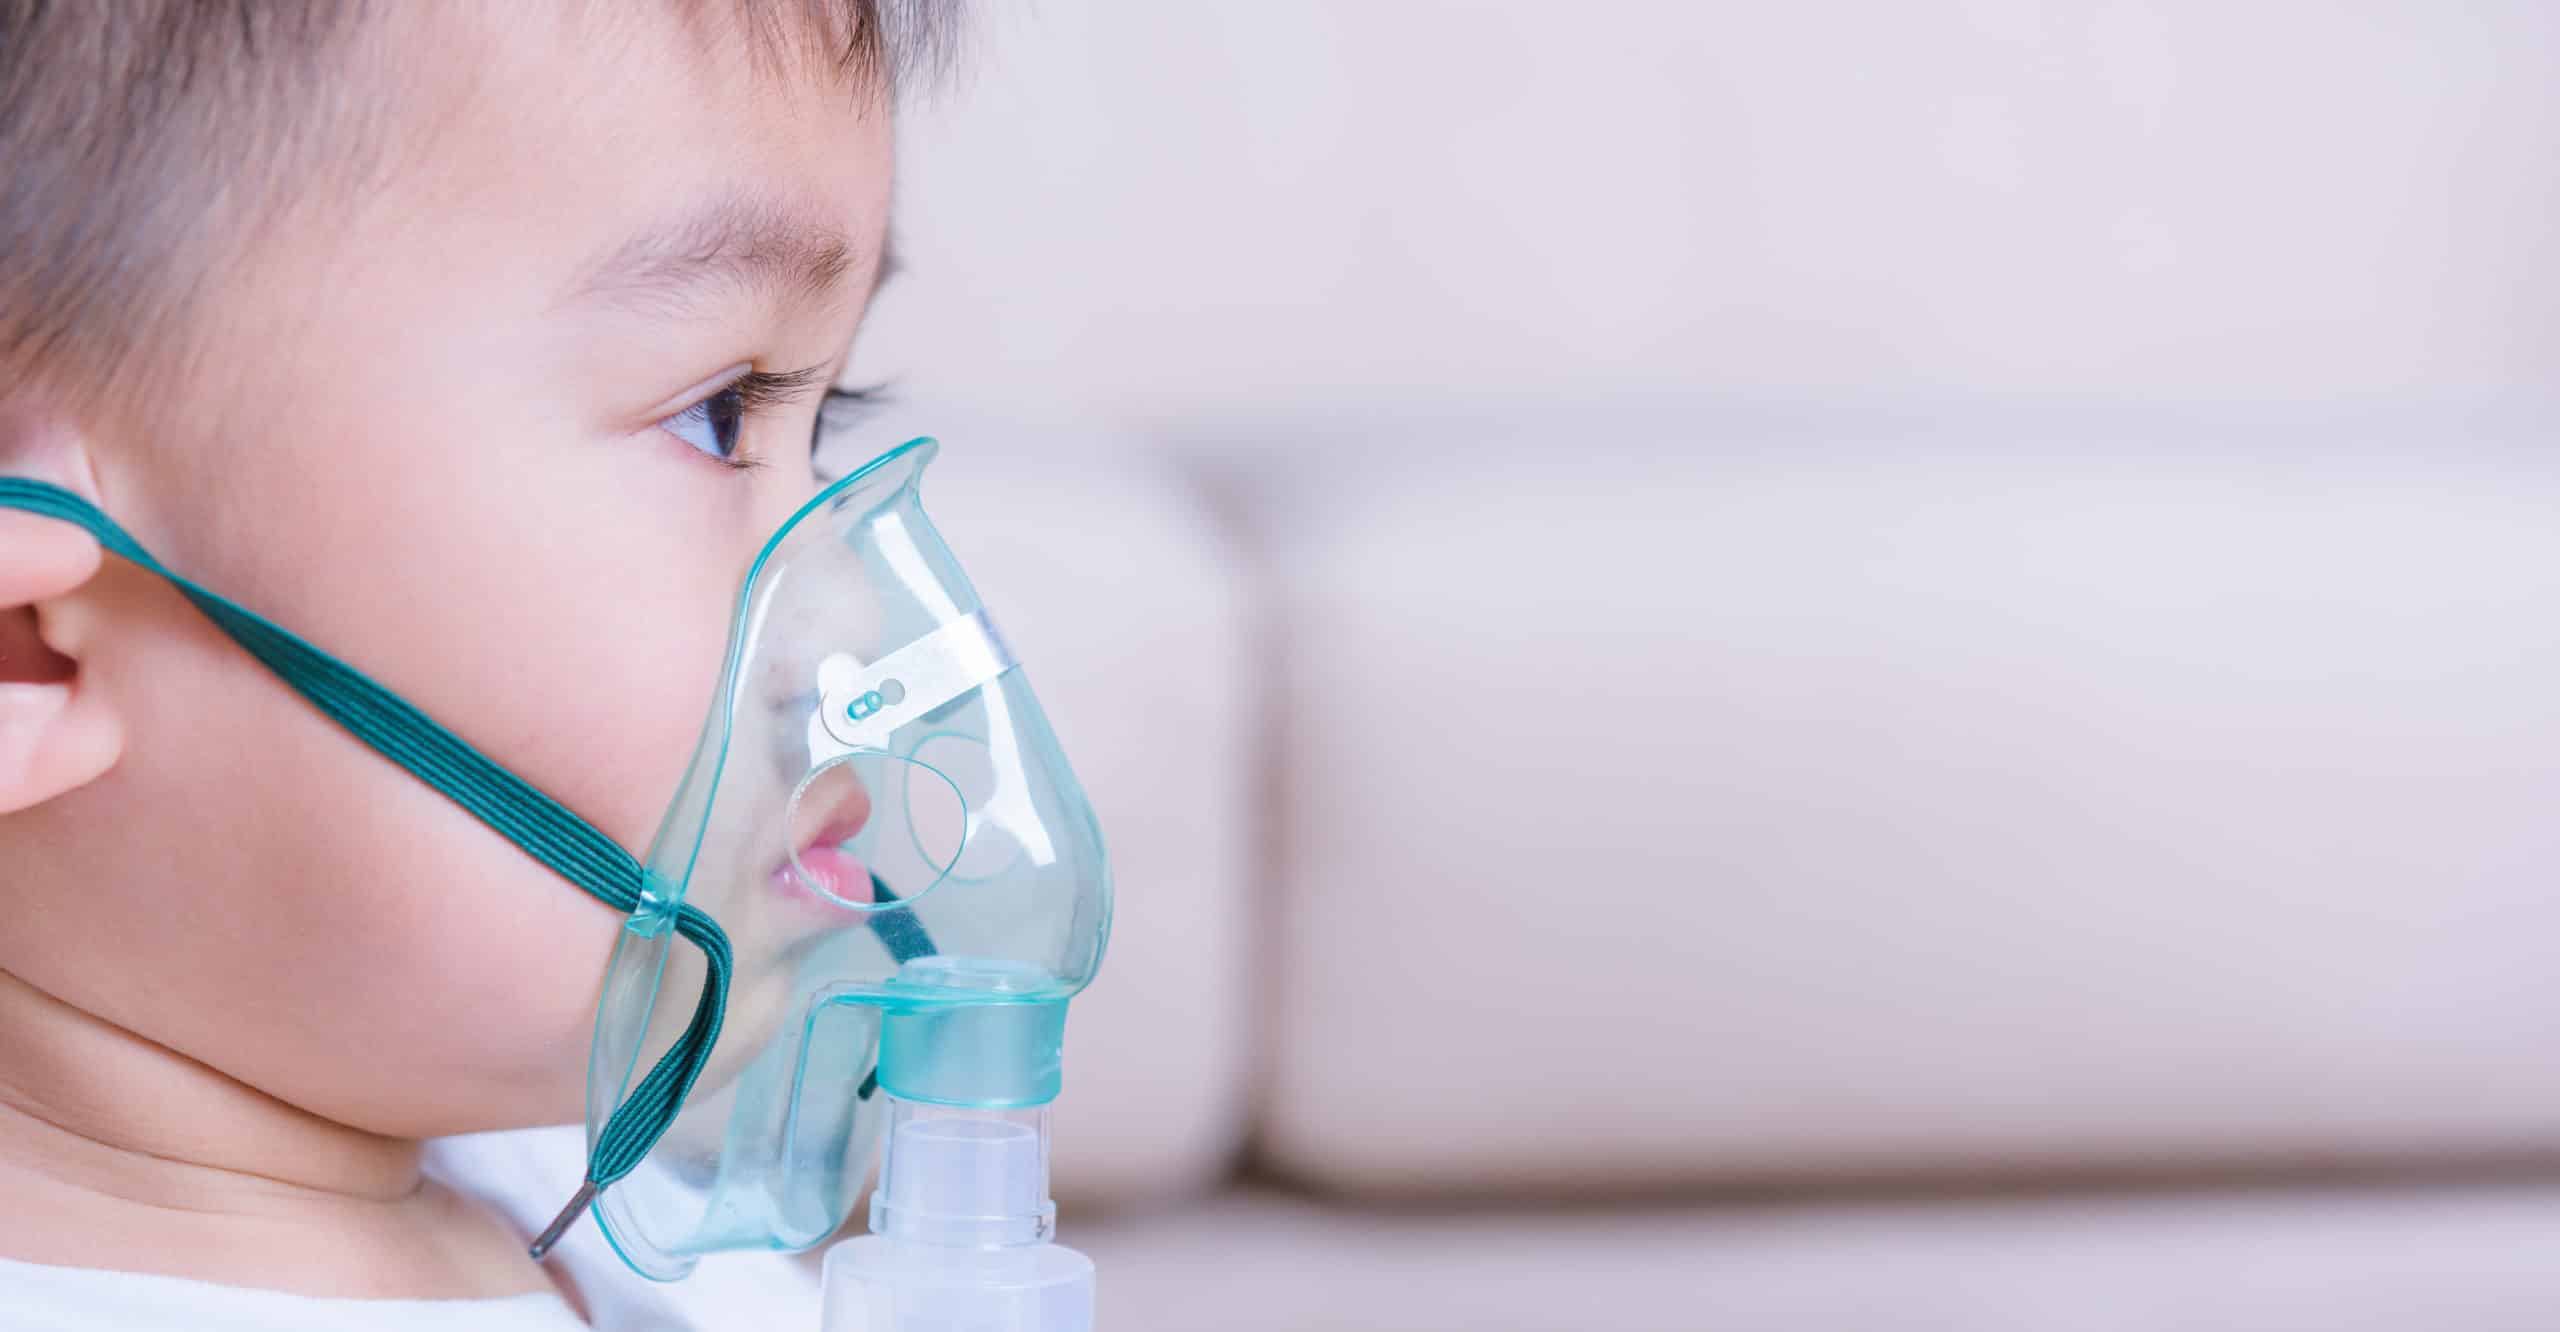 Consultas por infecciones respiratorias aumentaron en marzo; menores entre 1 y 9 años son los más afectados